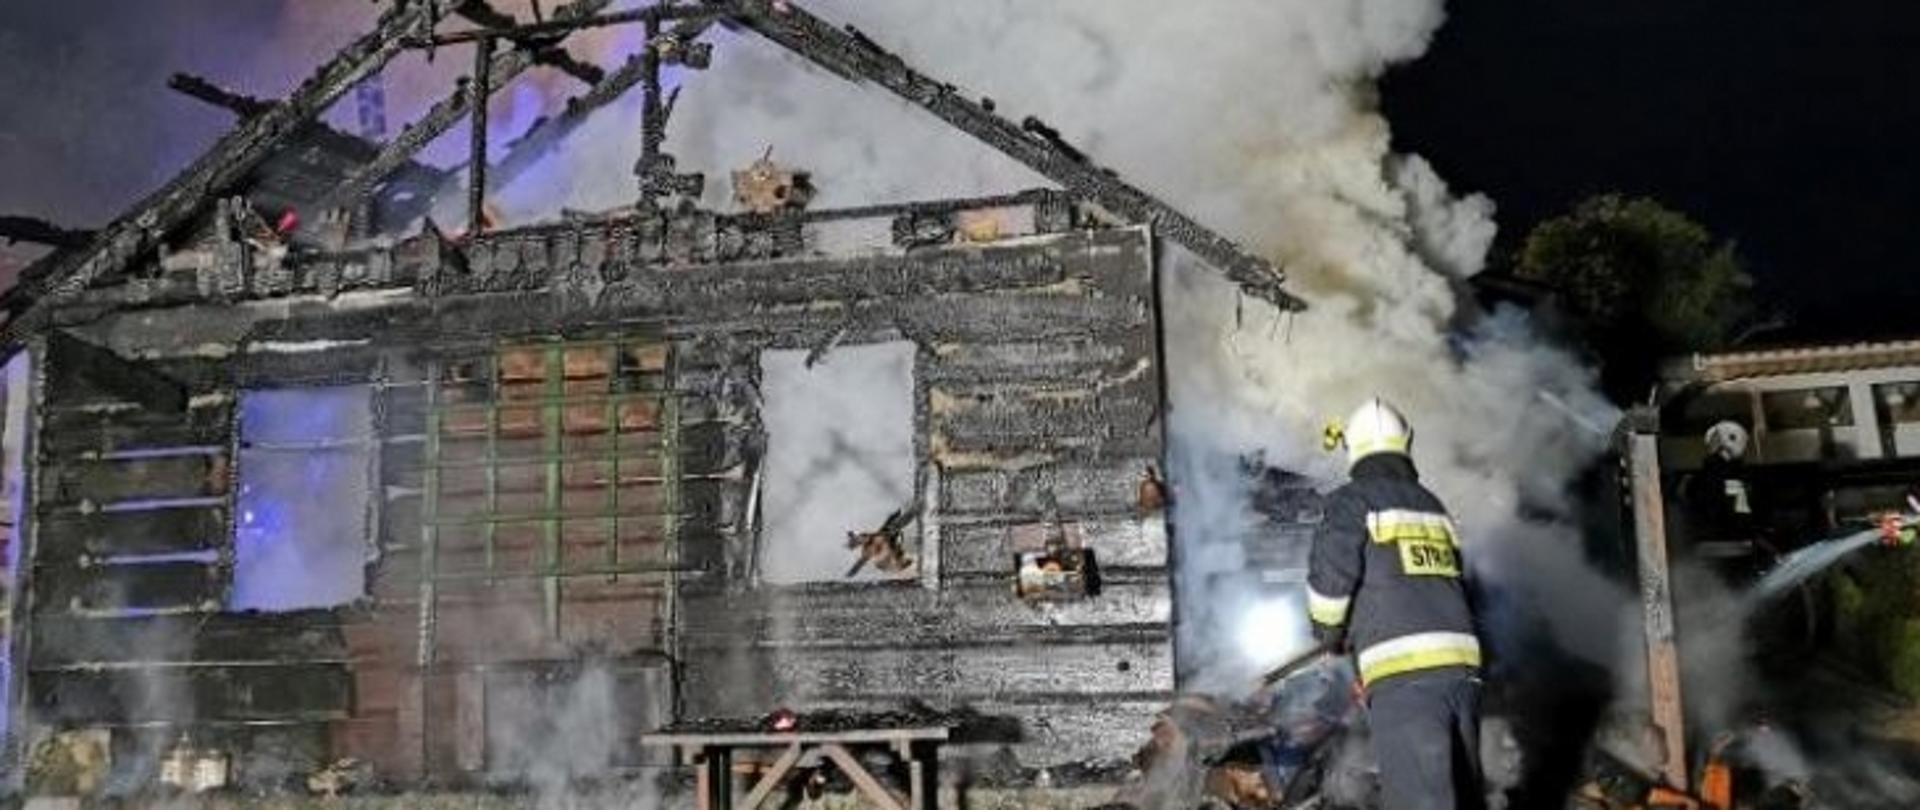 Zdjęcie przedstawia całkowicie spaloną zewnętrzną ścianę drewnianego budynku. Widoczne są fragmenty spalonego dachu w postaci mocno zwęglonych krokwi tworzących przedtem jego konstrukcje. Ponad dachem i przez uszkodzone w wyniku pożaru okna budynku widać unoszące się kłęby gęstego białego dymu. Obok budynku, w prawym jego rogu uchwycono postać strażaka ubranego w ubranie specjalne koloru granatowego w odblaskowymi popielato seledynowymi paskami na nogawkach spodni oraz rękawach i w dolnej i środkowej części kurtki, z białym kaskiem na głowie. Strażak ten w pozycji pół pochylonej zajmuje się dogaszaniem sterty spalonych rzeczy wyniesionych prawdopodobnie z wewnątrz objętych pożarem pomieszczeń. Przed spalonym budynkiem, pod oknem stoi nadpalona drewniana ławka.